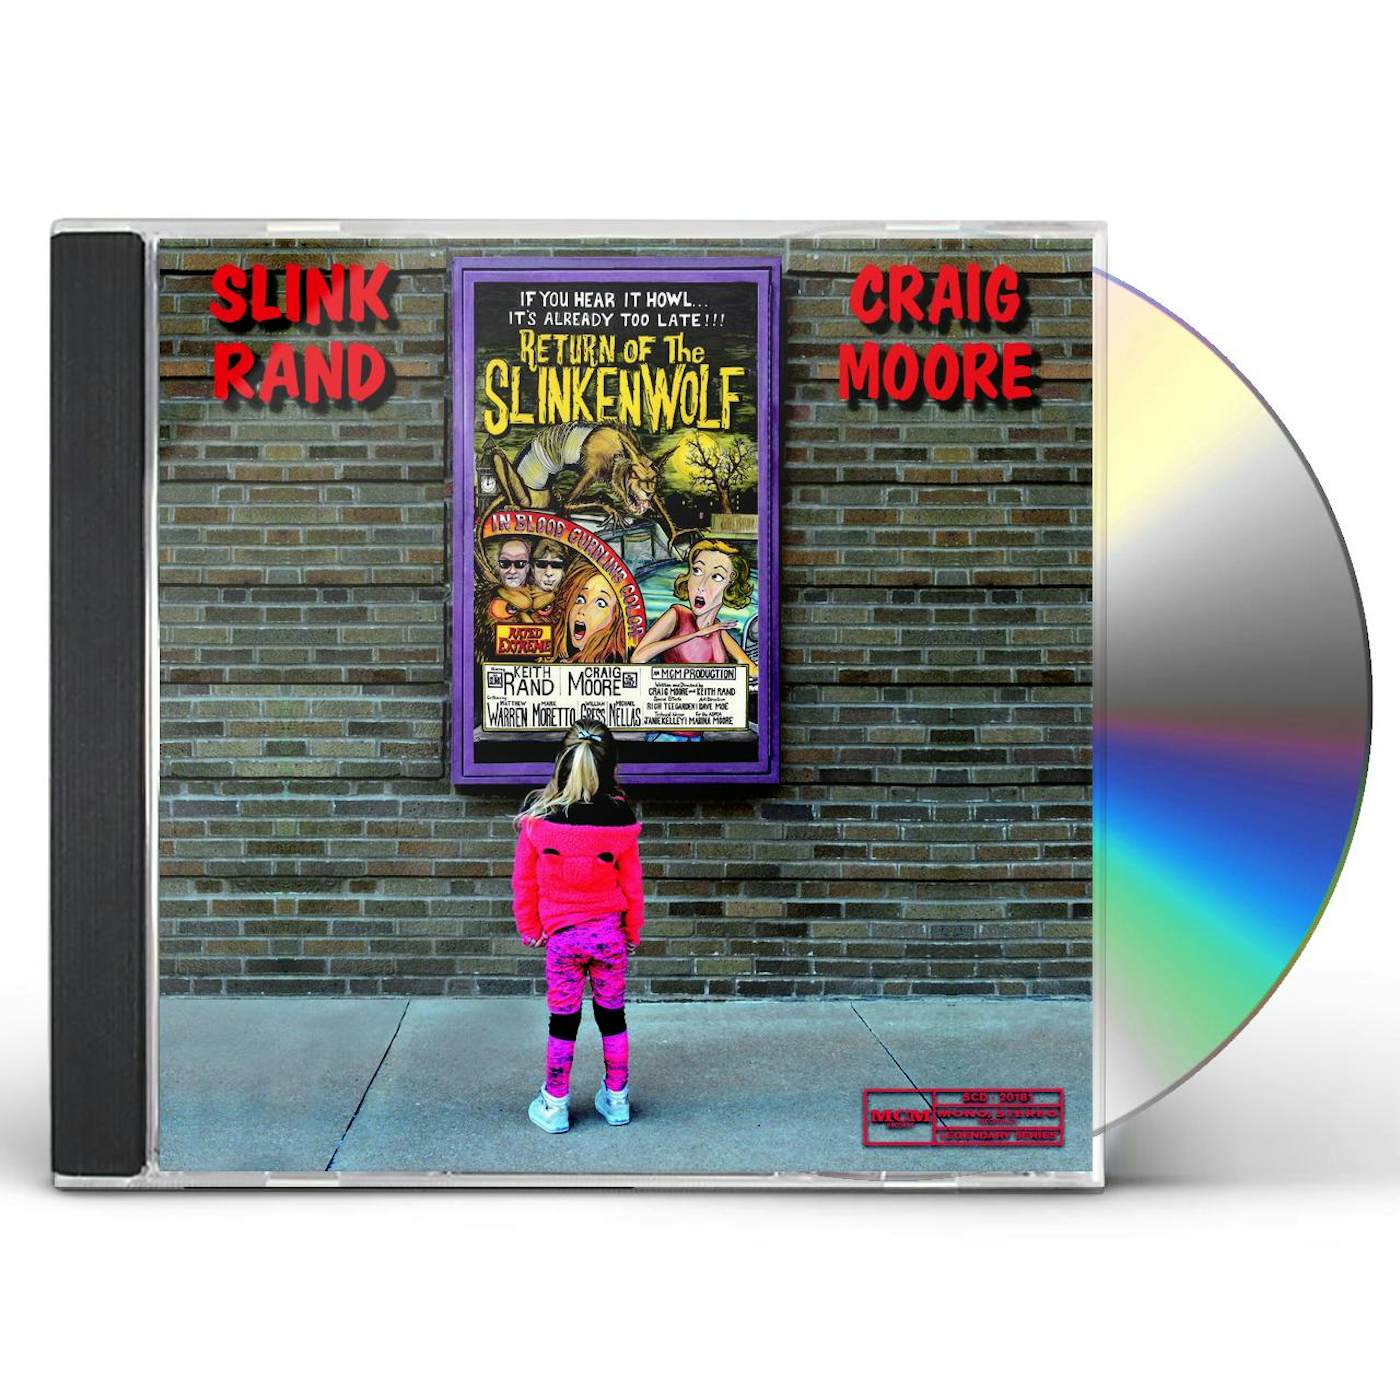 Slink Rand & Craig Moore RETURN OF THE SLINKENWOLF CD